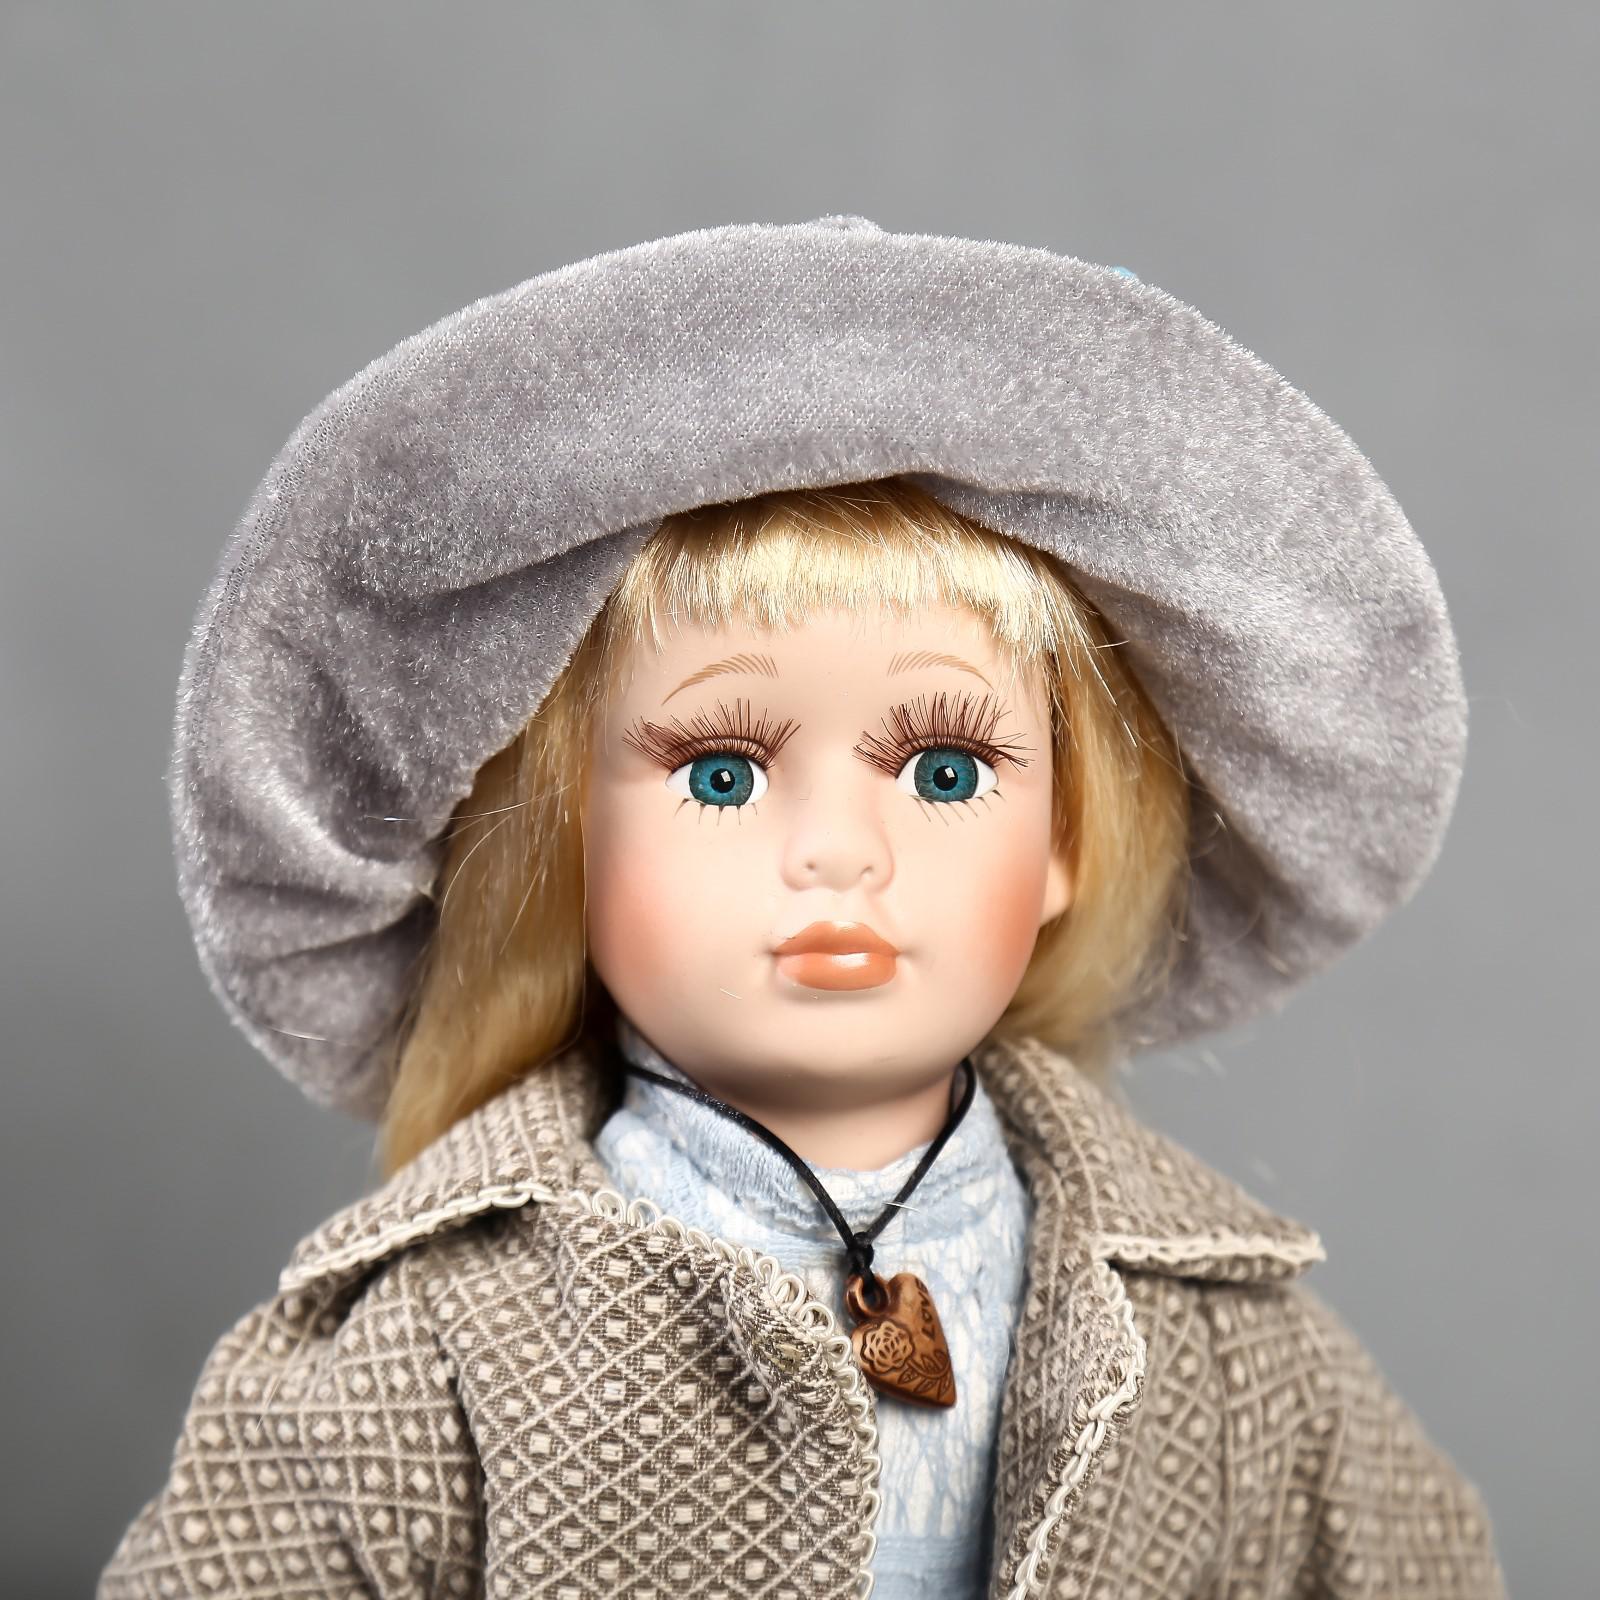 Кукла коллекционная Зимнее волшебство керамика «Лиза в голубом кружевном платье и серой курточке» 40 см - фото 5